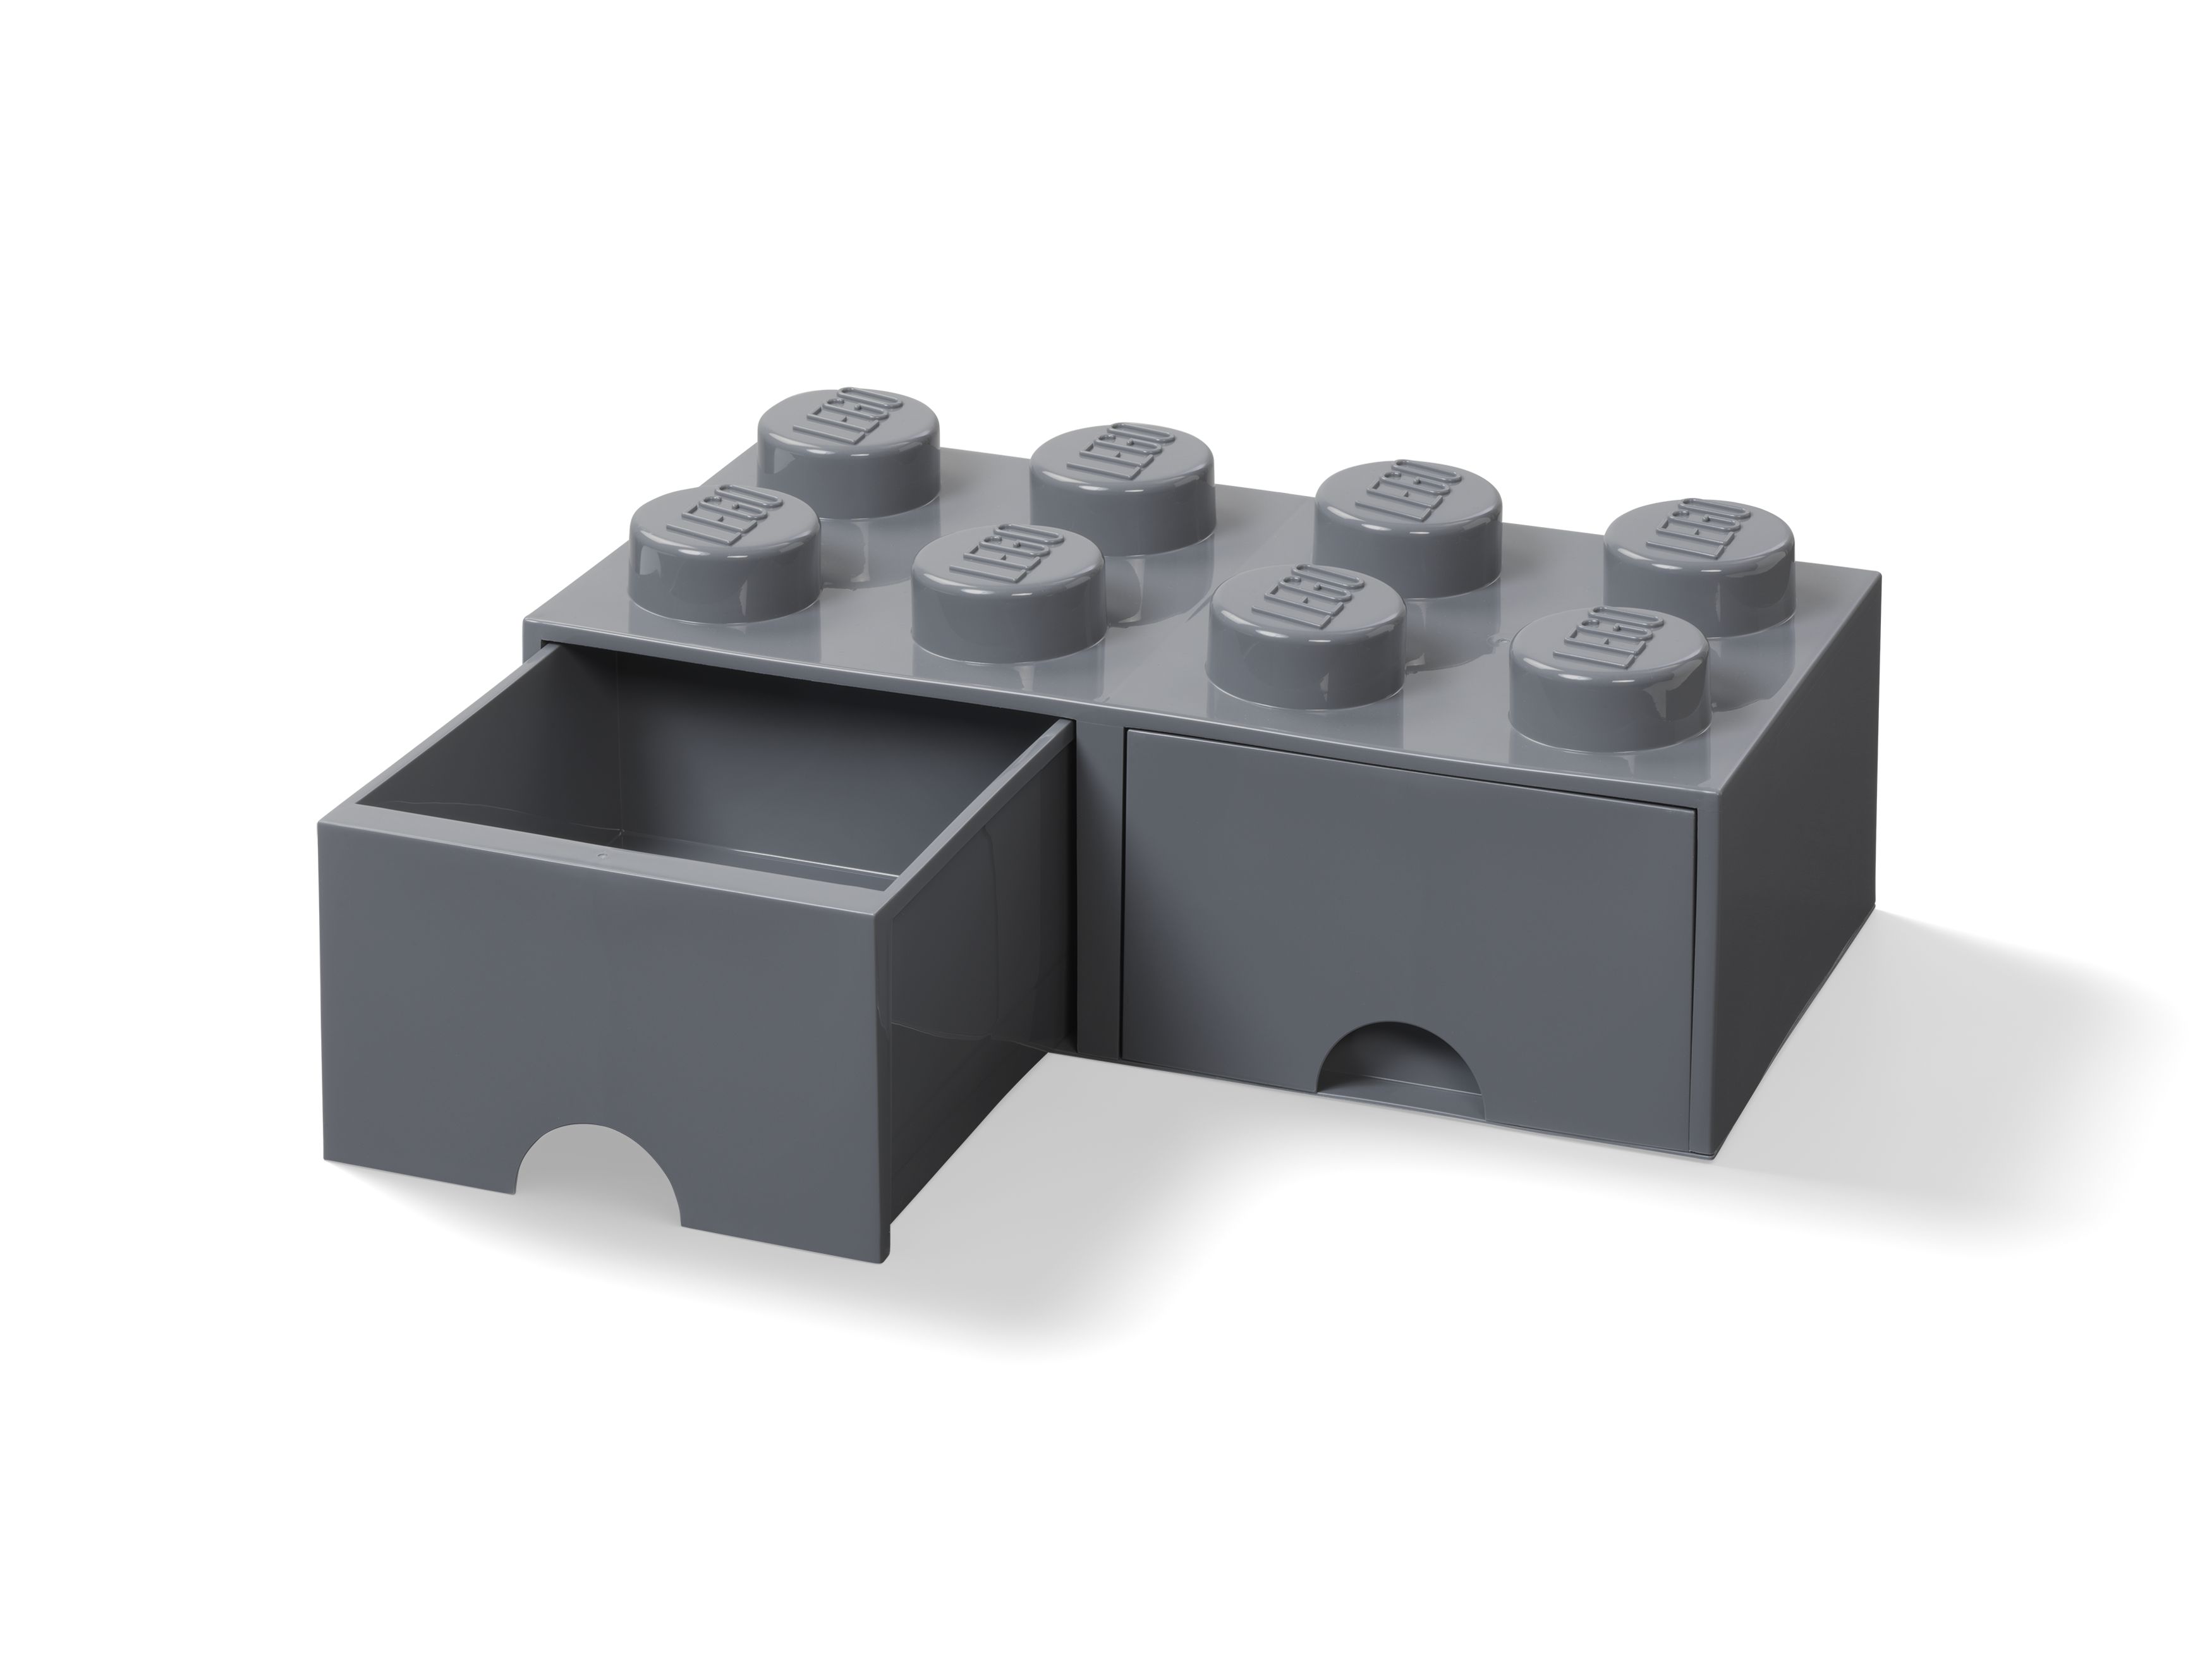 LEGO Gear 5006329 Aufbewahrungsstein mit Schubfächern in Dunkelgrau LEGO_5006329_alt1.jpg